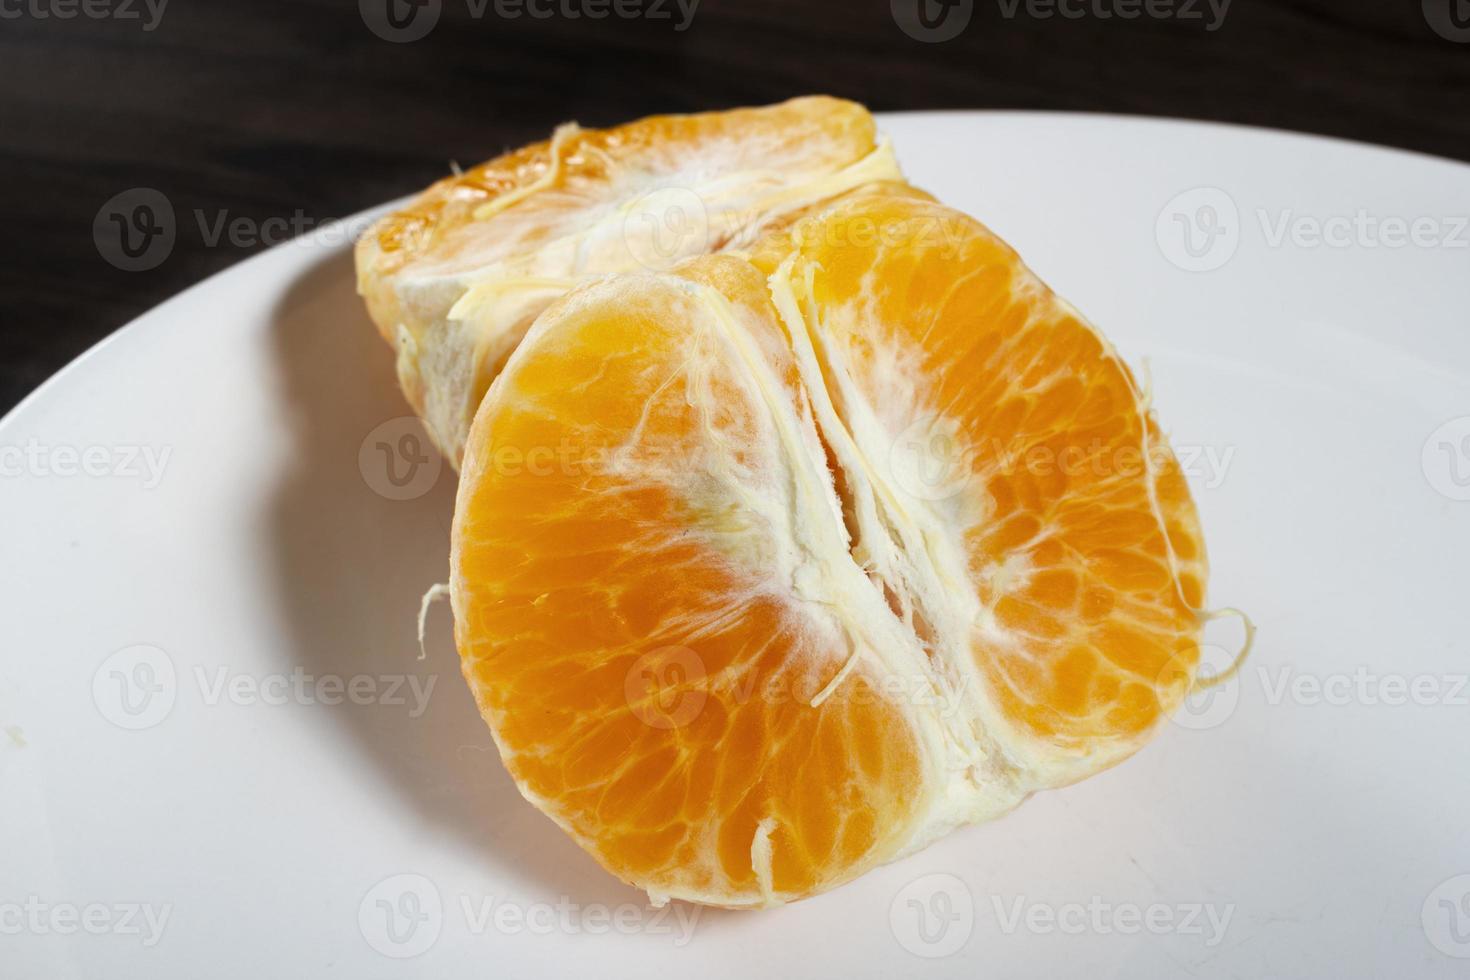 Murcott de mandarina fresca sobre la mesa. enfoque selectivo. foto